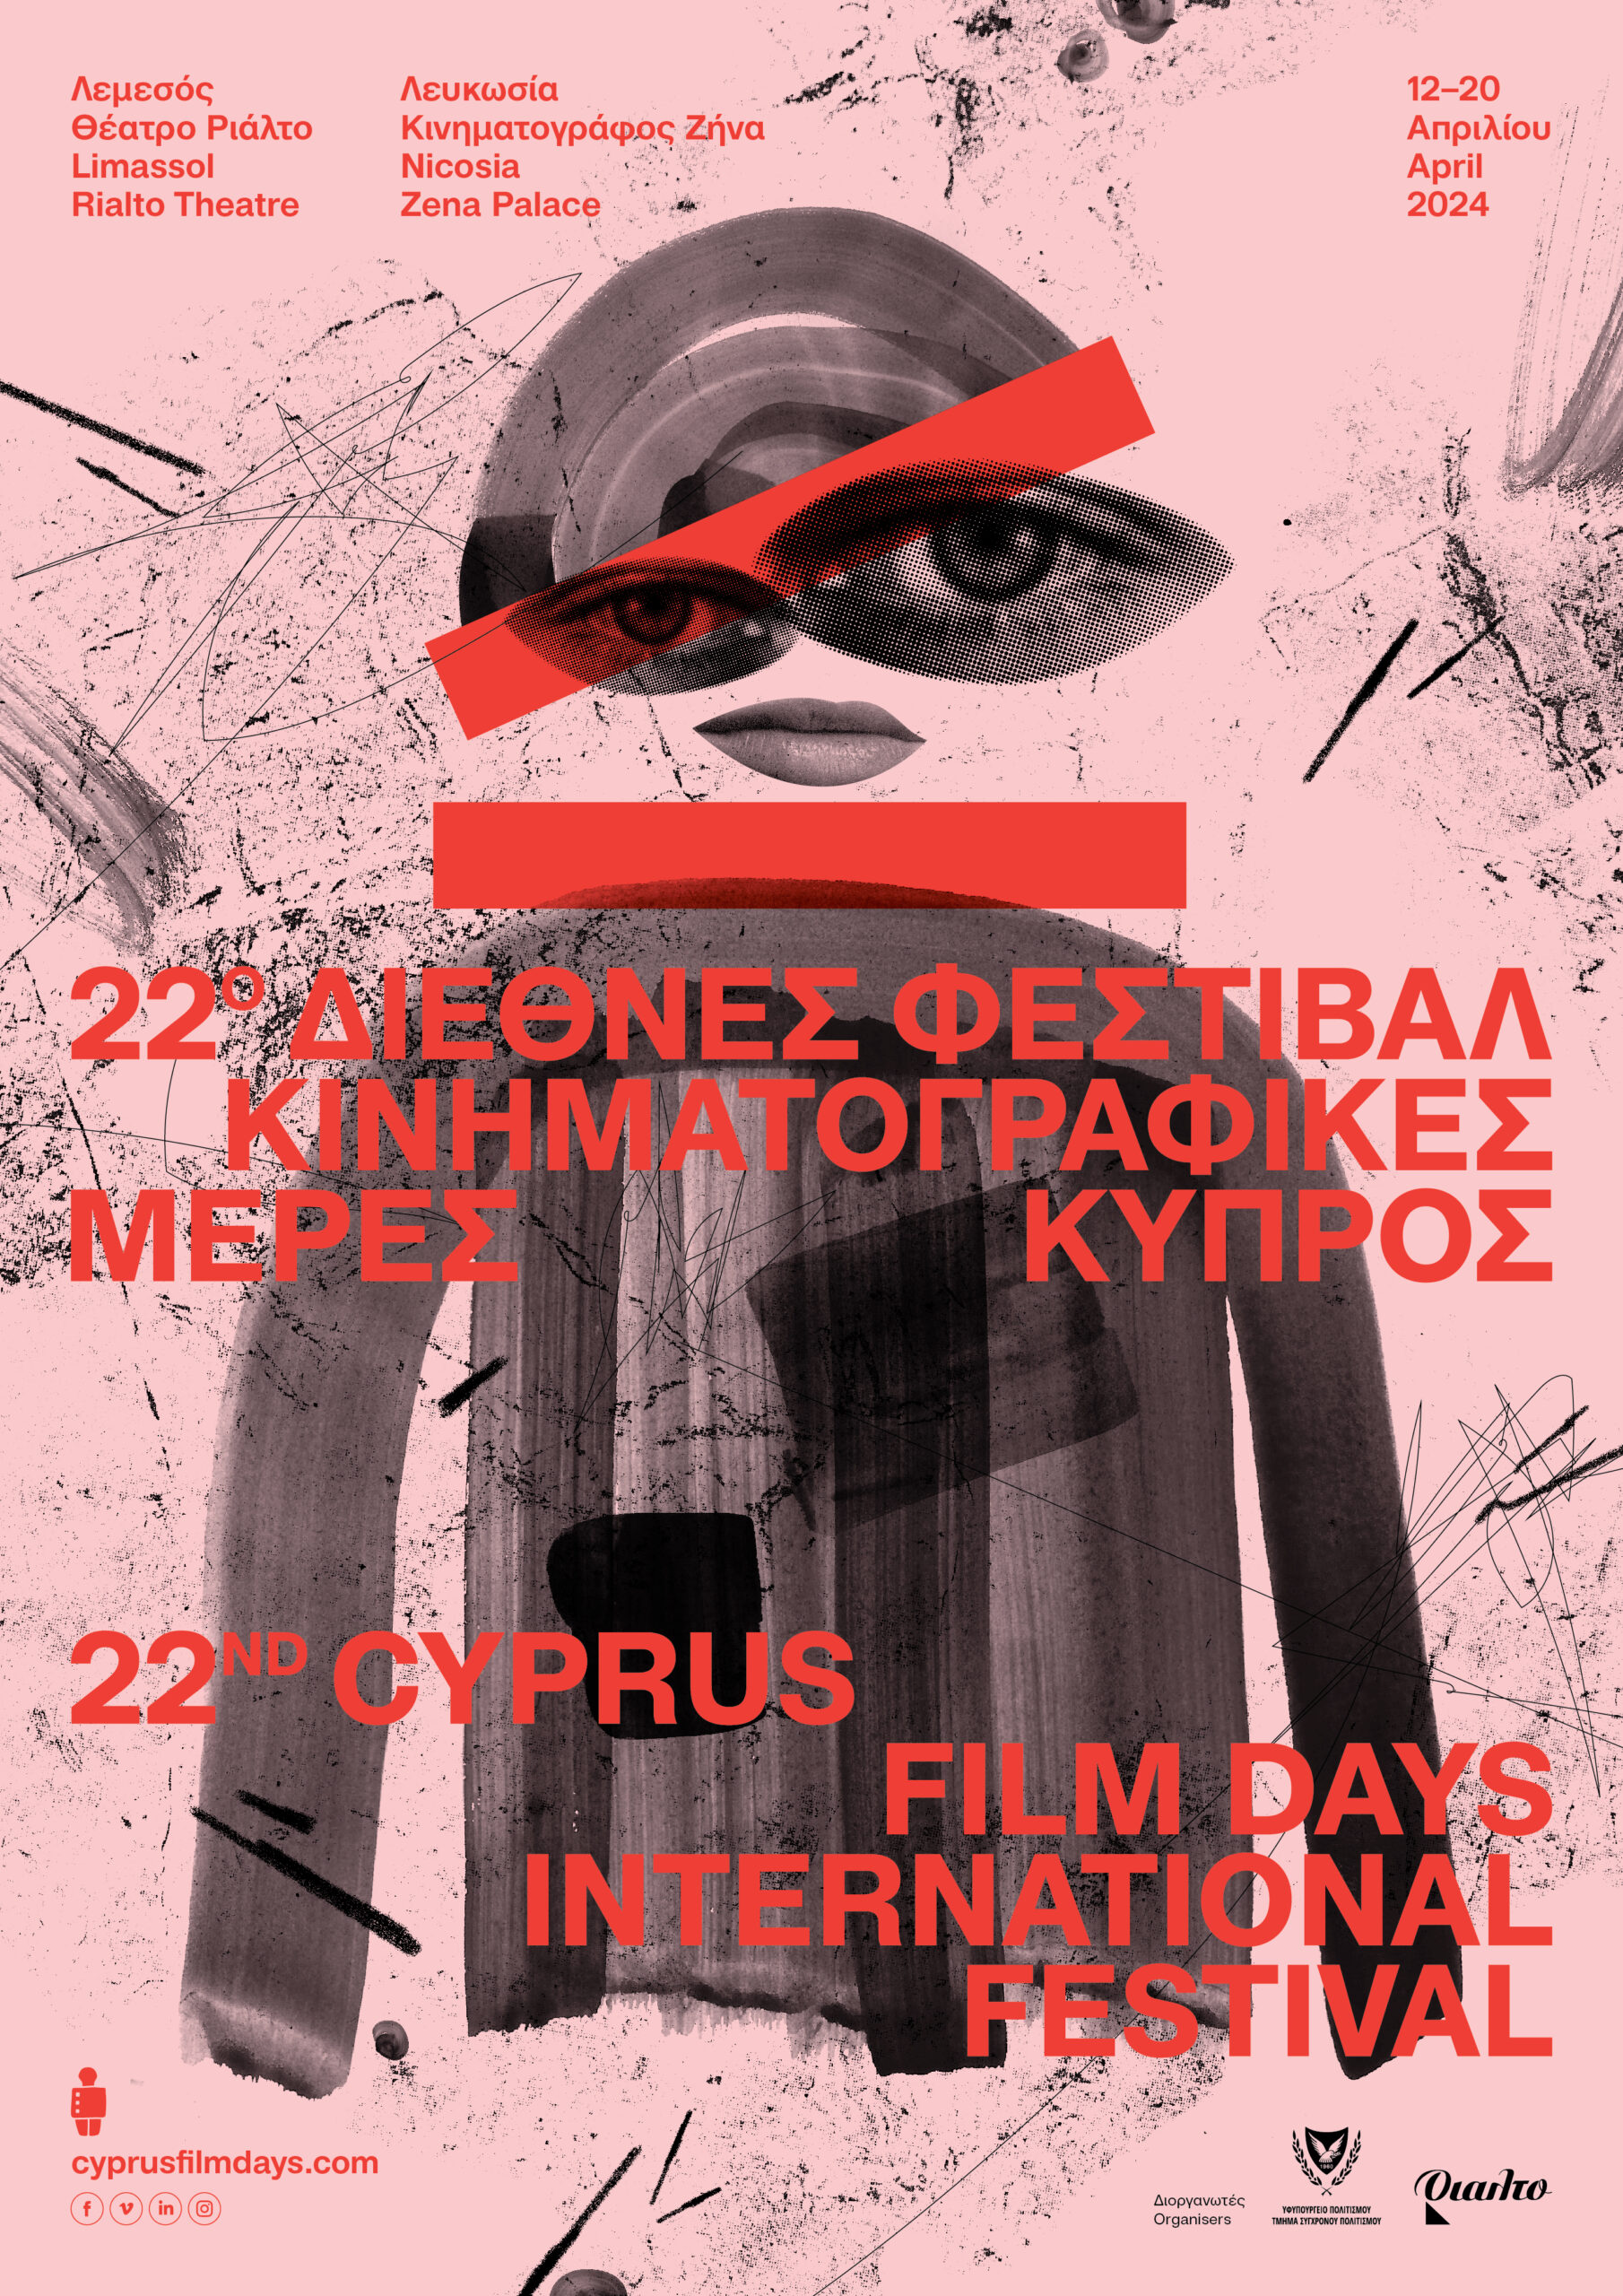 22 ο Διεθνές Φεστιβάλ Κινηματογραφικές Μέρες Κύπρος 2024